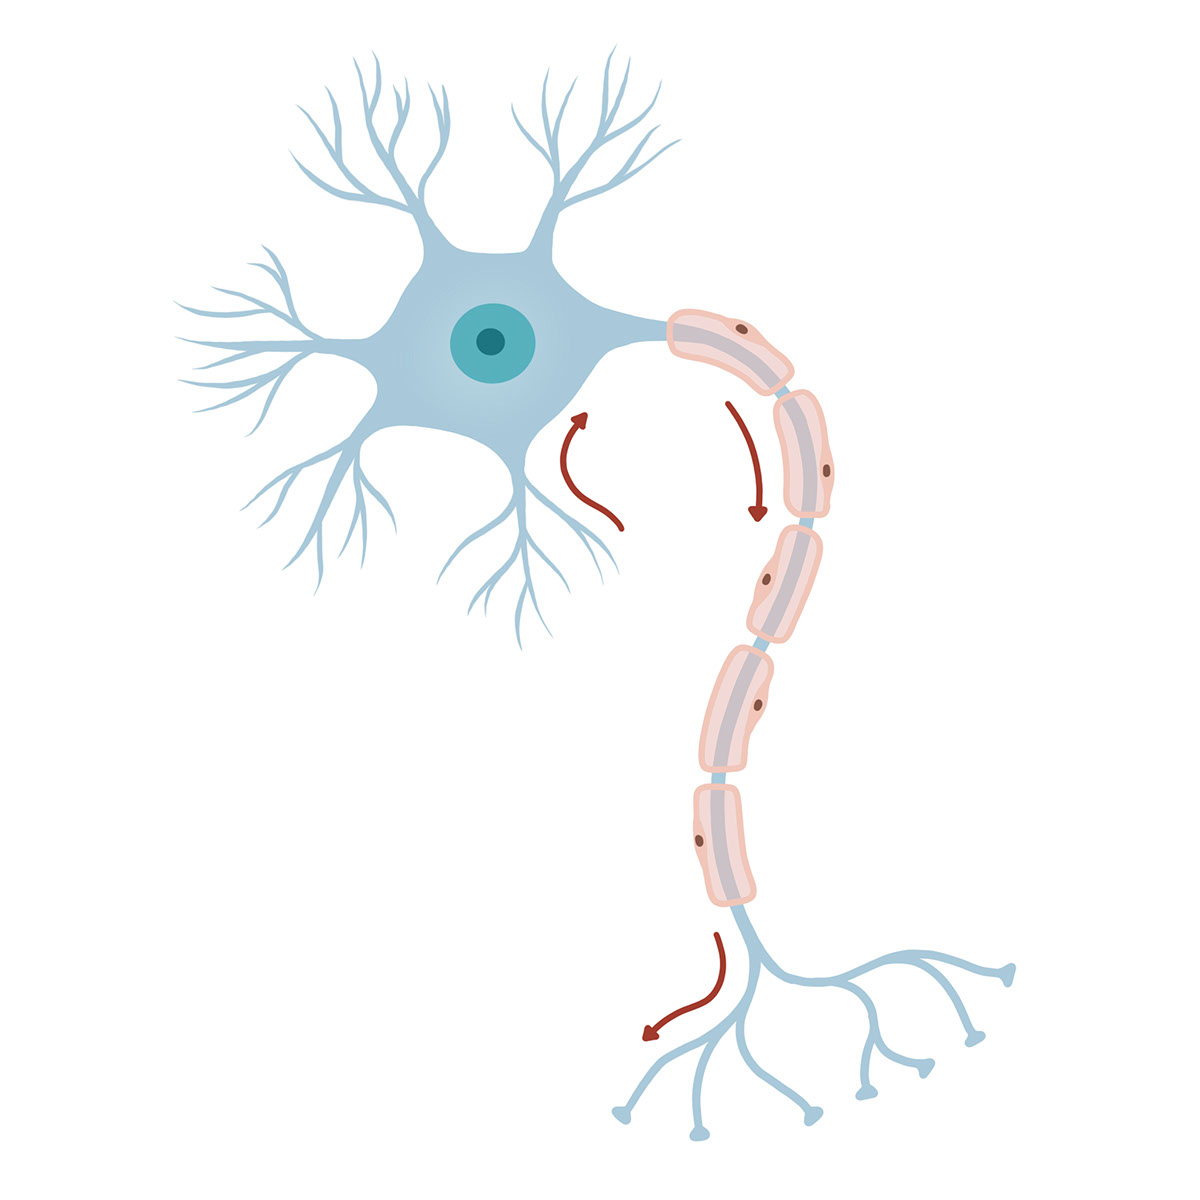 neuron rendition image